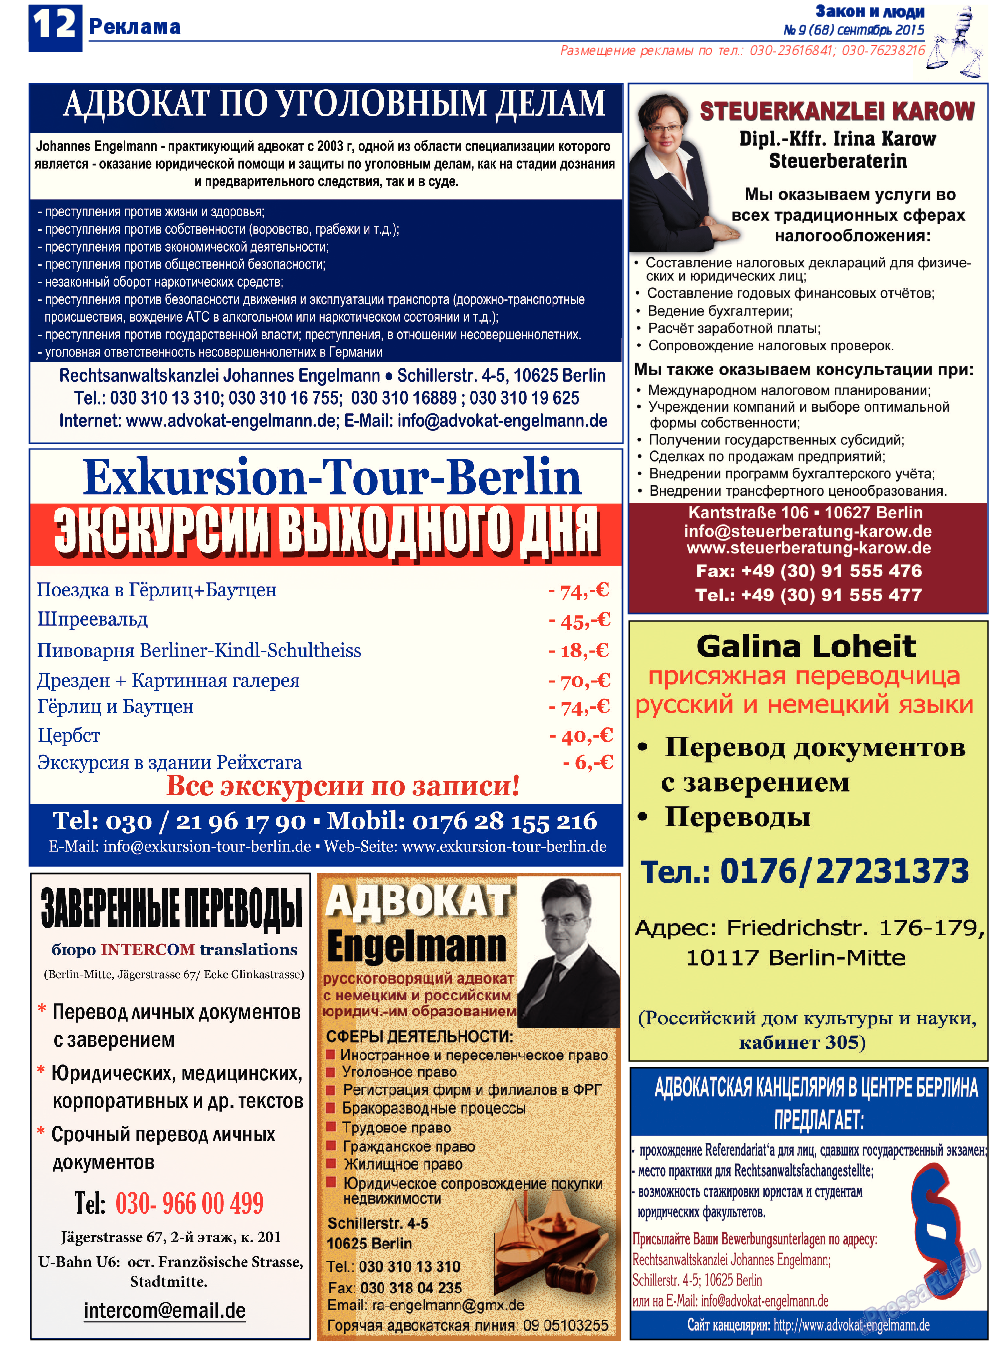 Закон и люди, газета. 2015 №9 стр.12